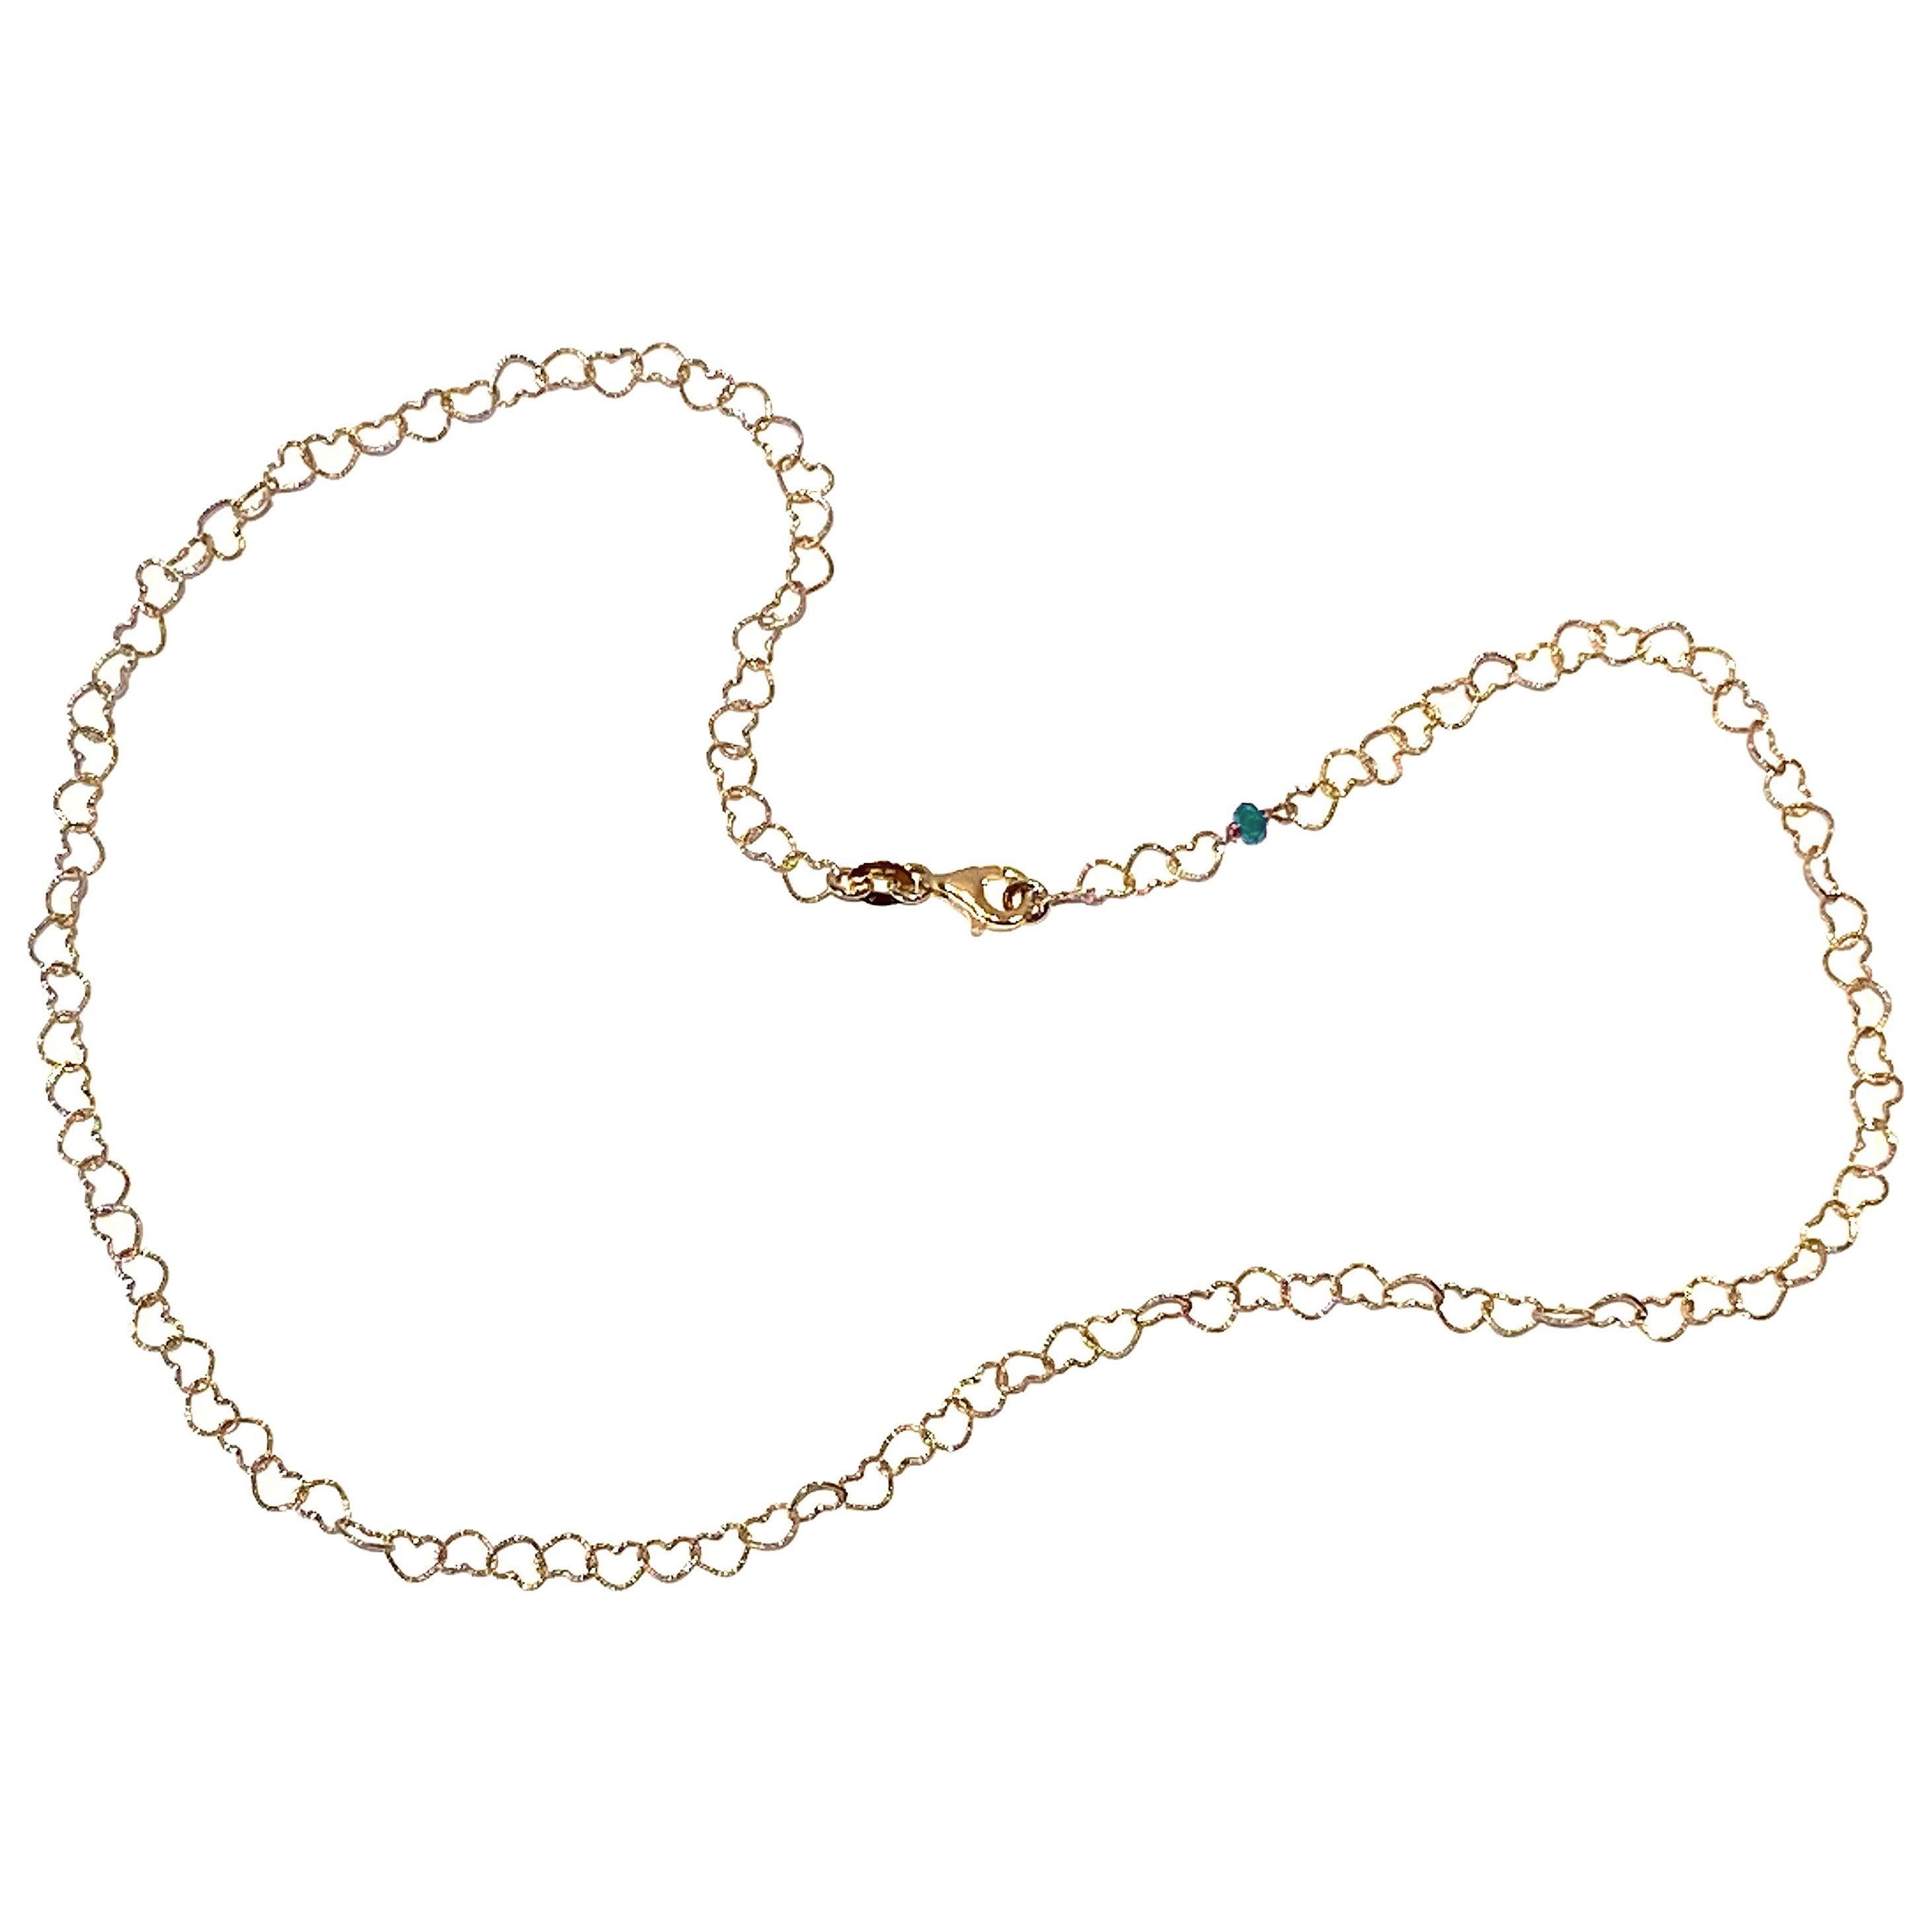 Halskette "Little Hearts" aus 18 Karat Gelbgold mit 0,50 Karat Smaragd im romantischen Stil